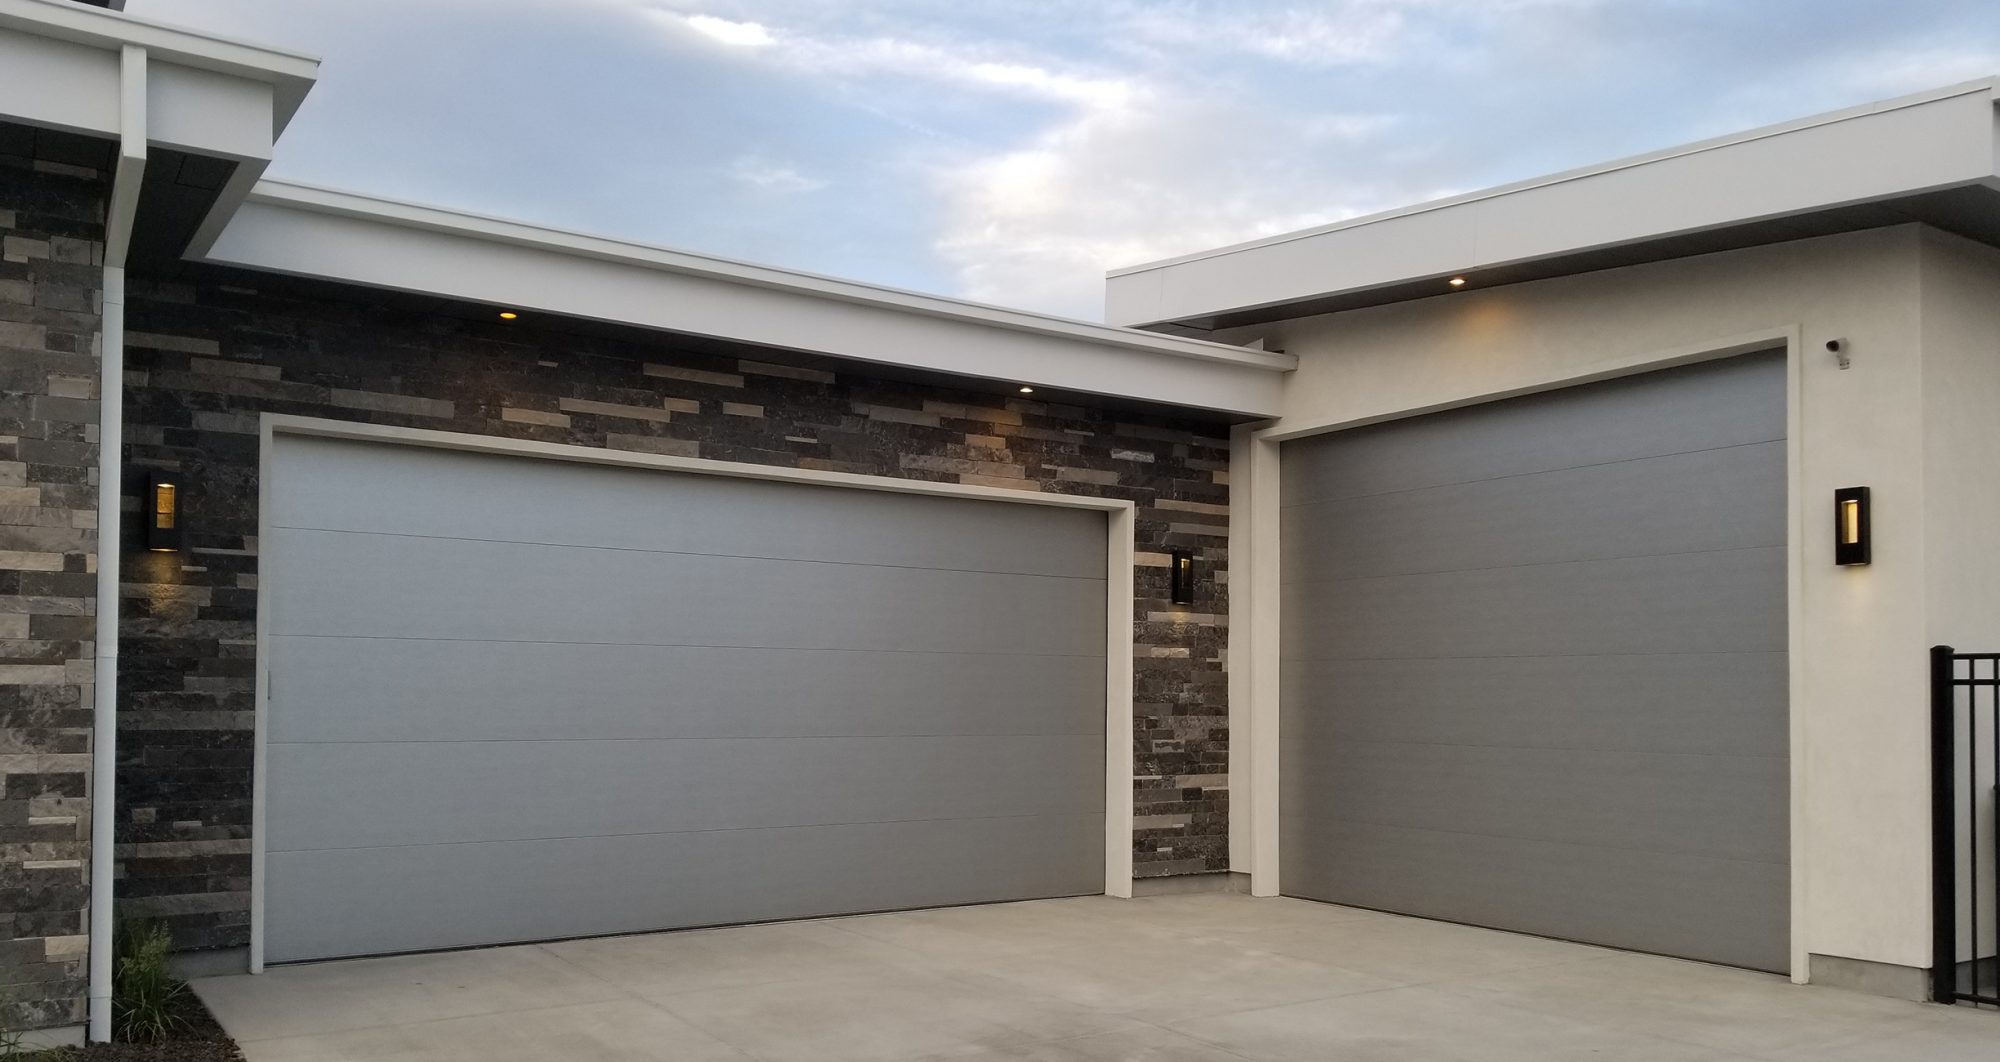 Steel Garage Doors Vs Aluminum Garage Doors? Which Material is Best?